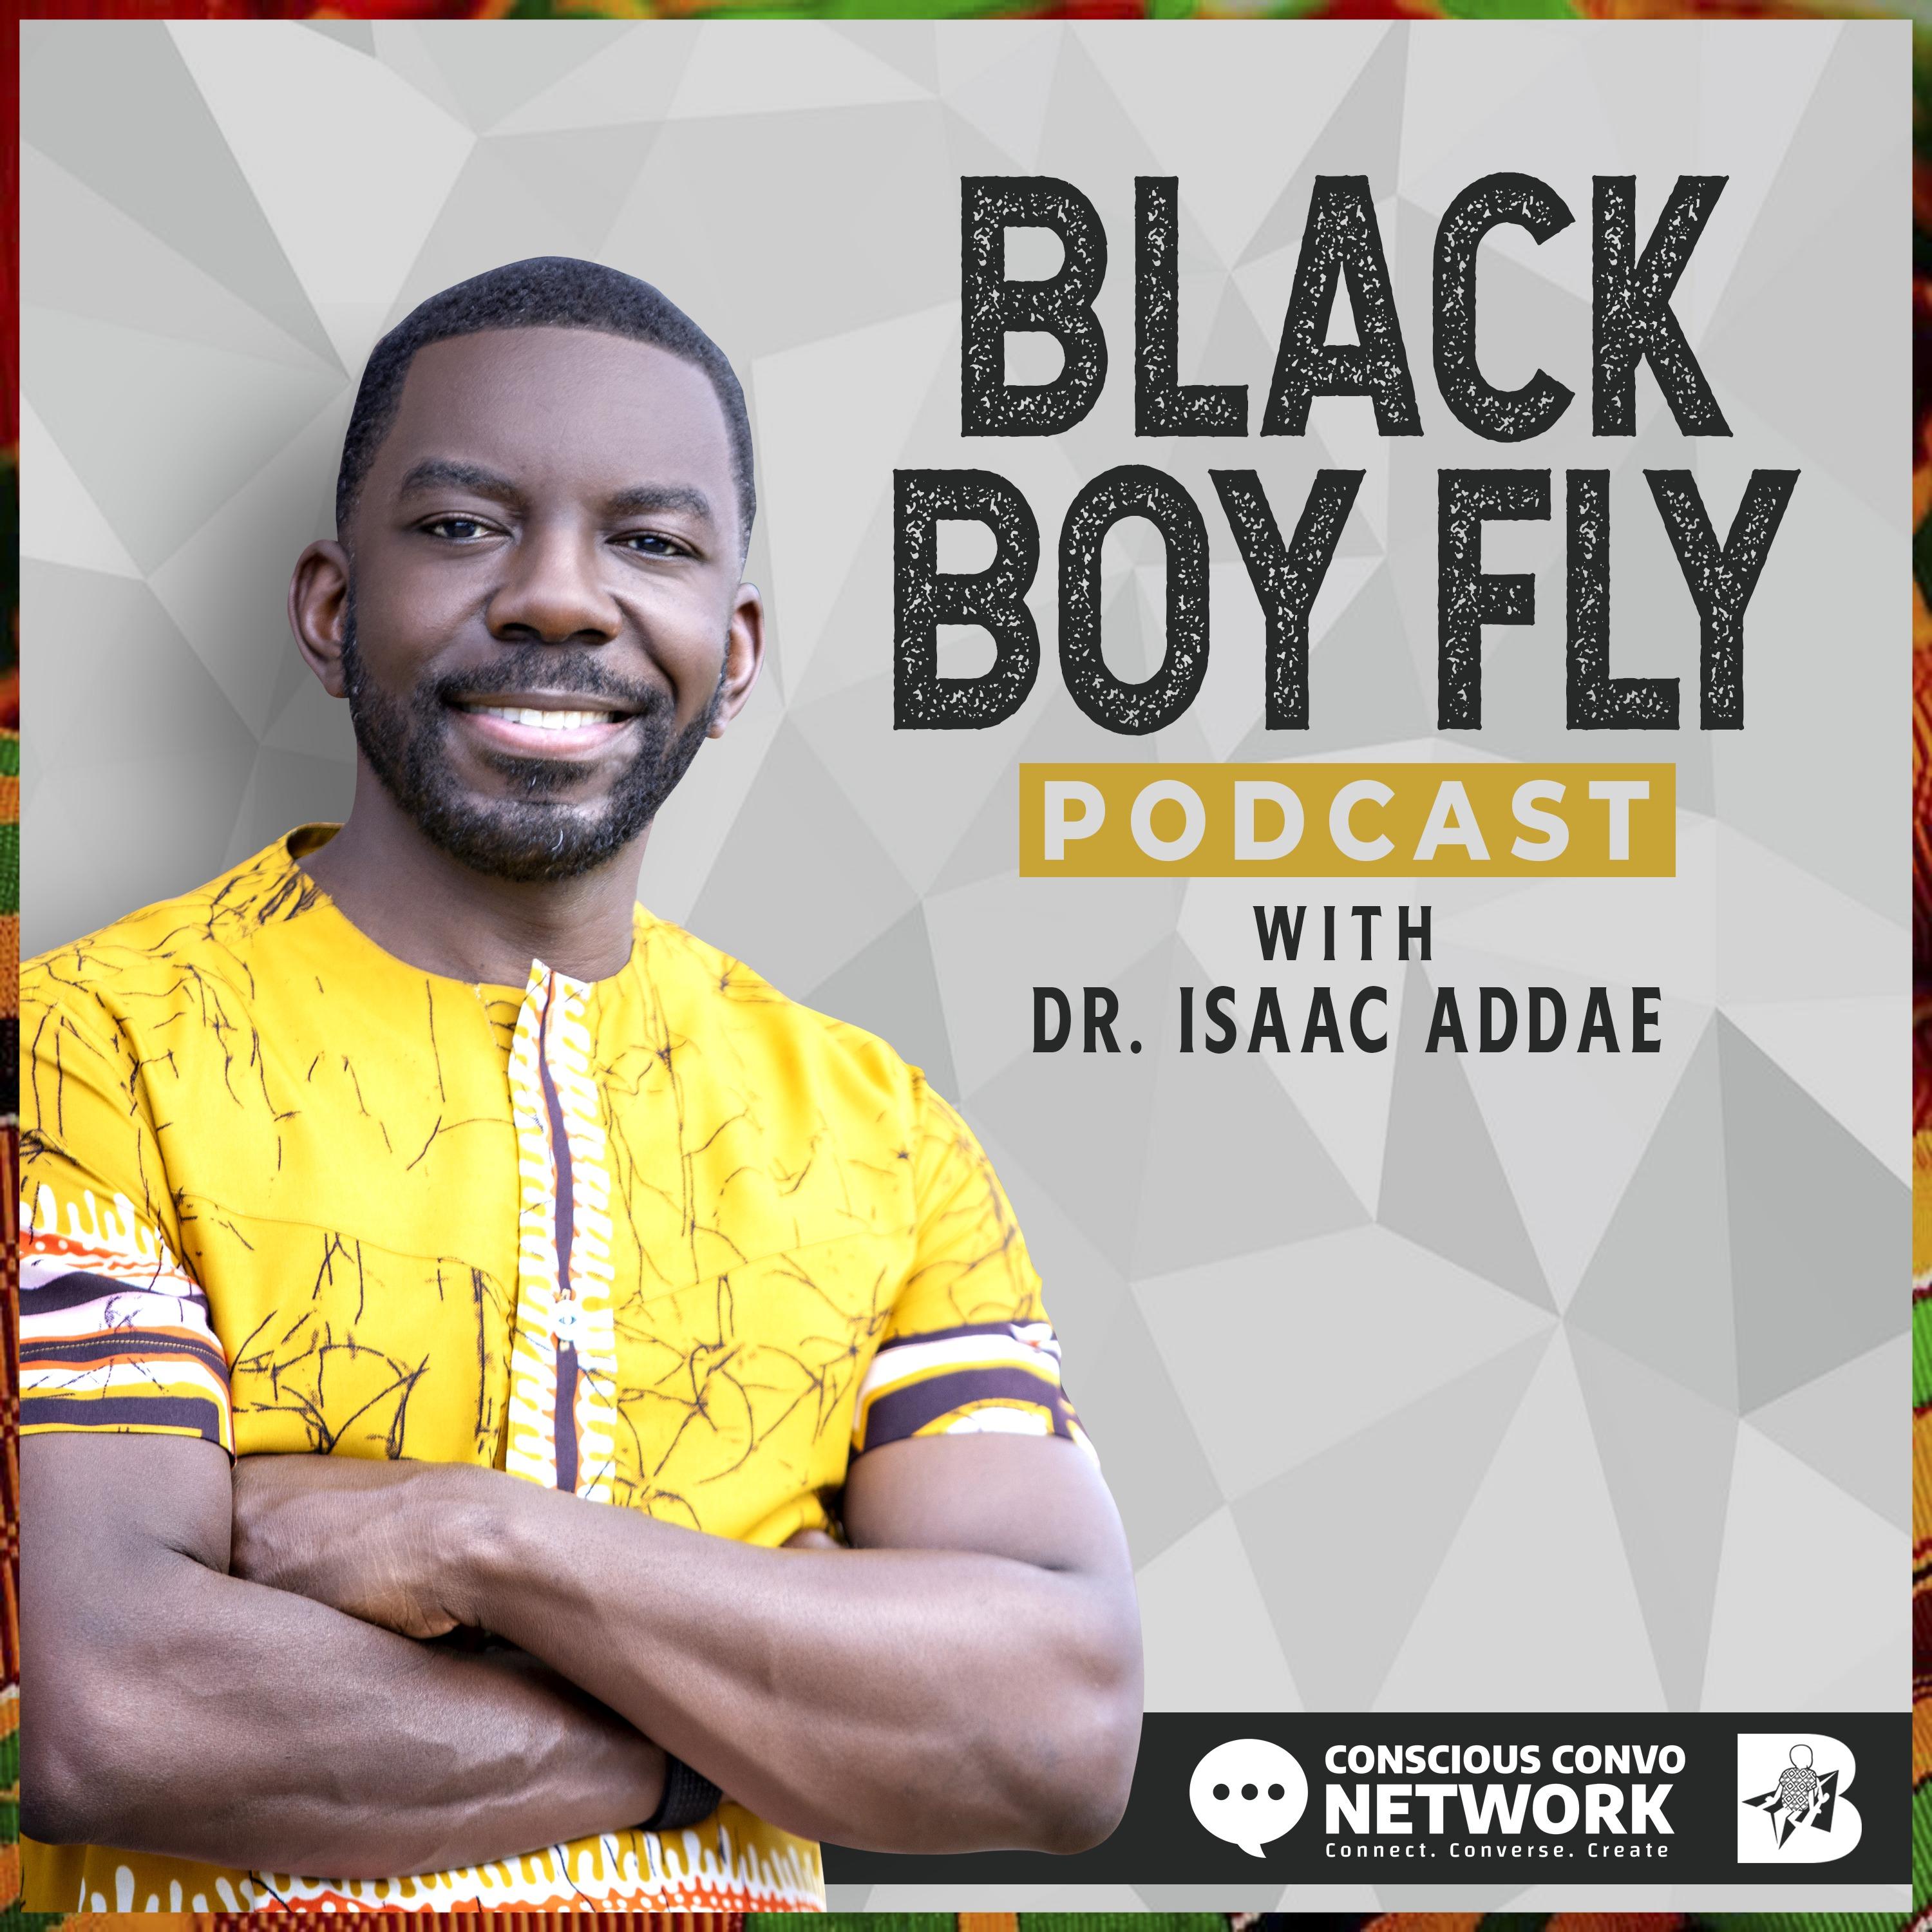 Black Boy Fly Podcast